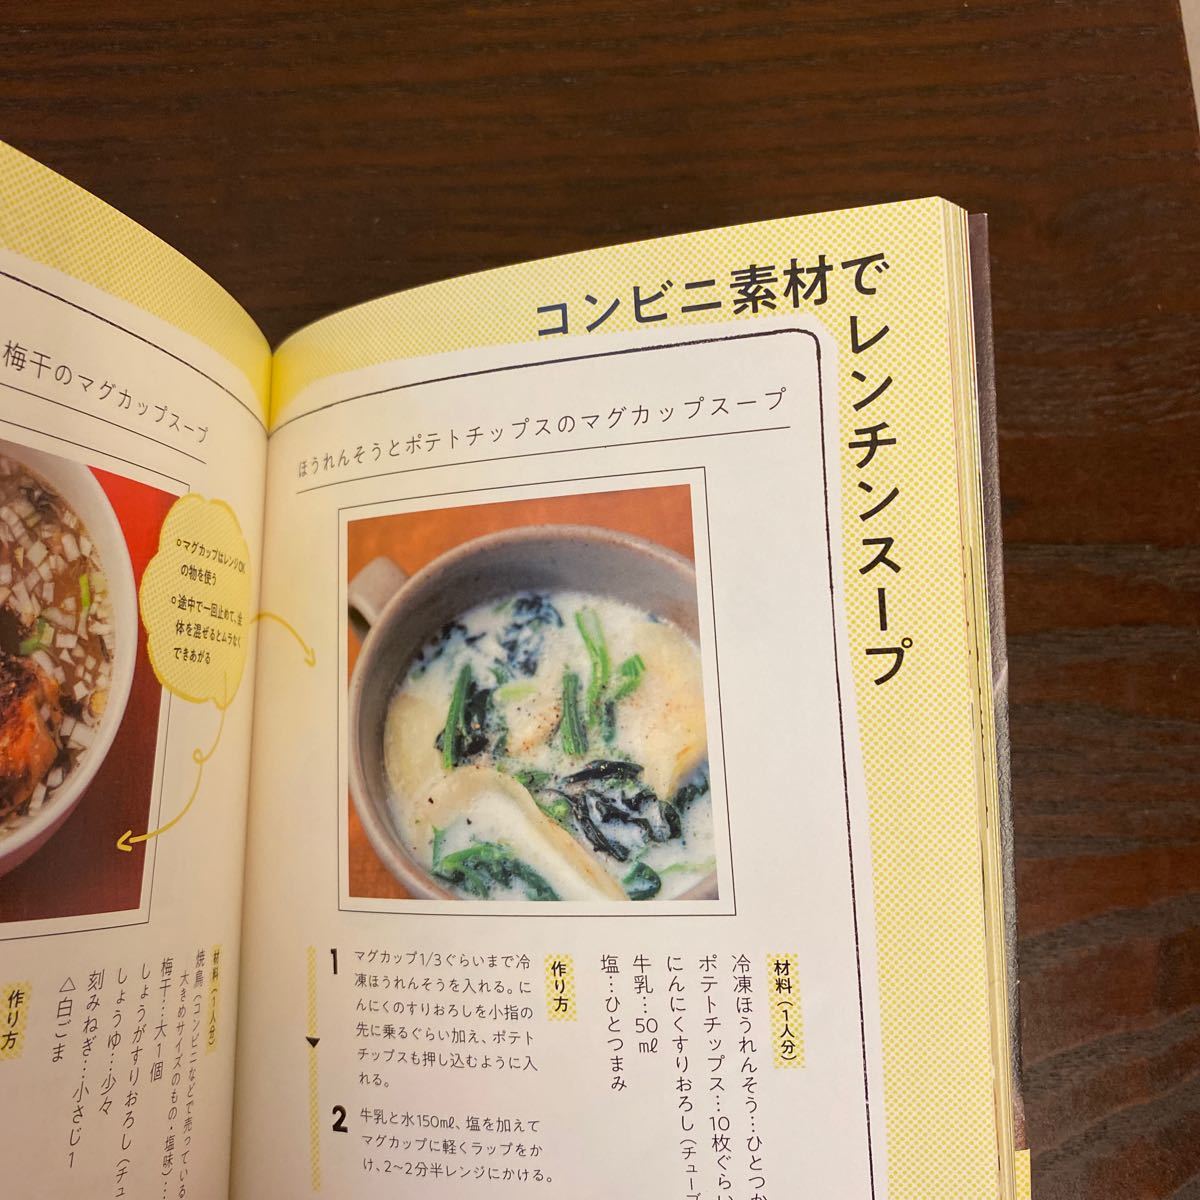 【簡単スープレシピ本/料理本】帰り遅いけど、こんなスープなら作れそう 有賀薫